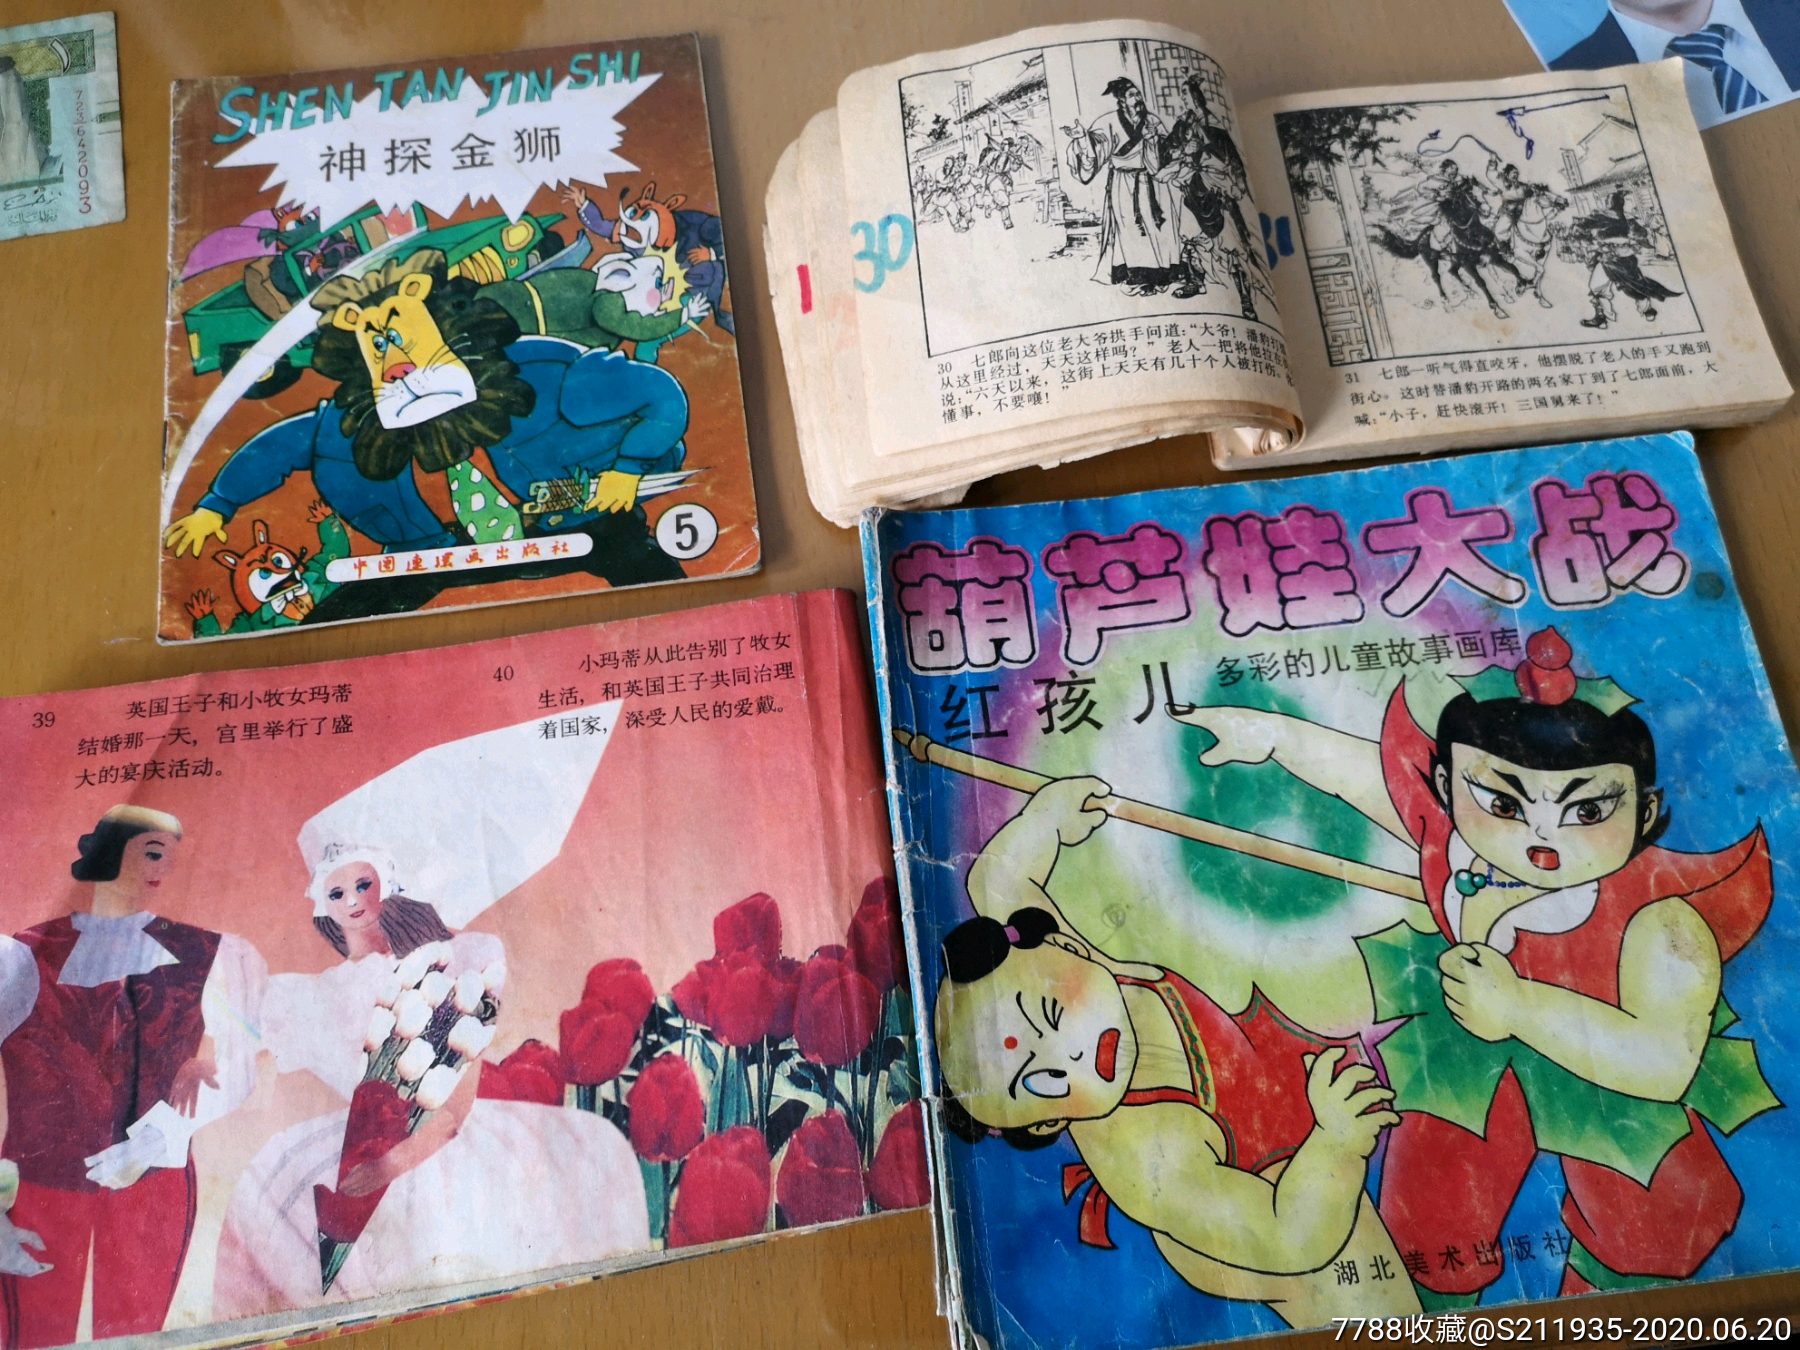 杨七郎打擂小人书,90年代儿童动画册,神探金狮,葫芦娃大战等,保存基本